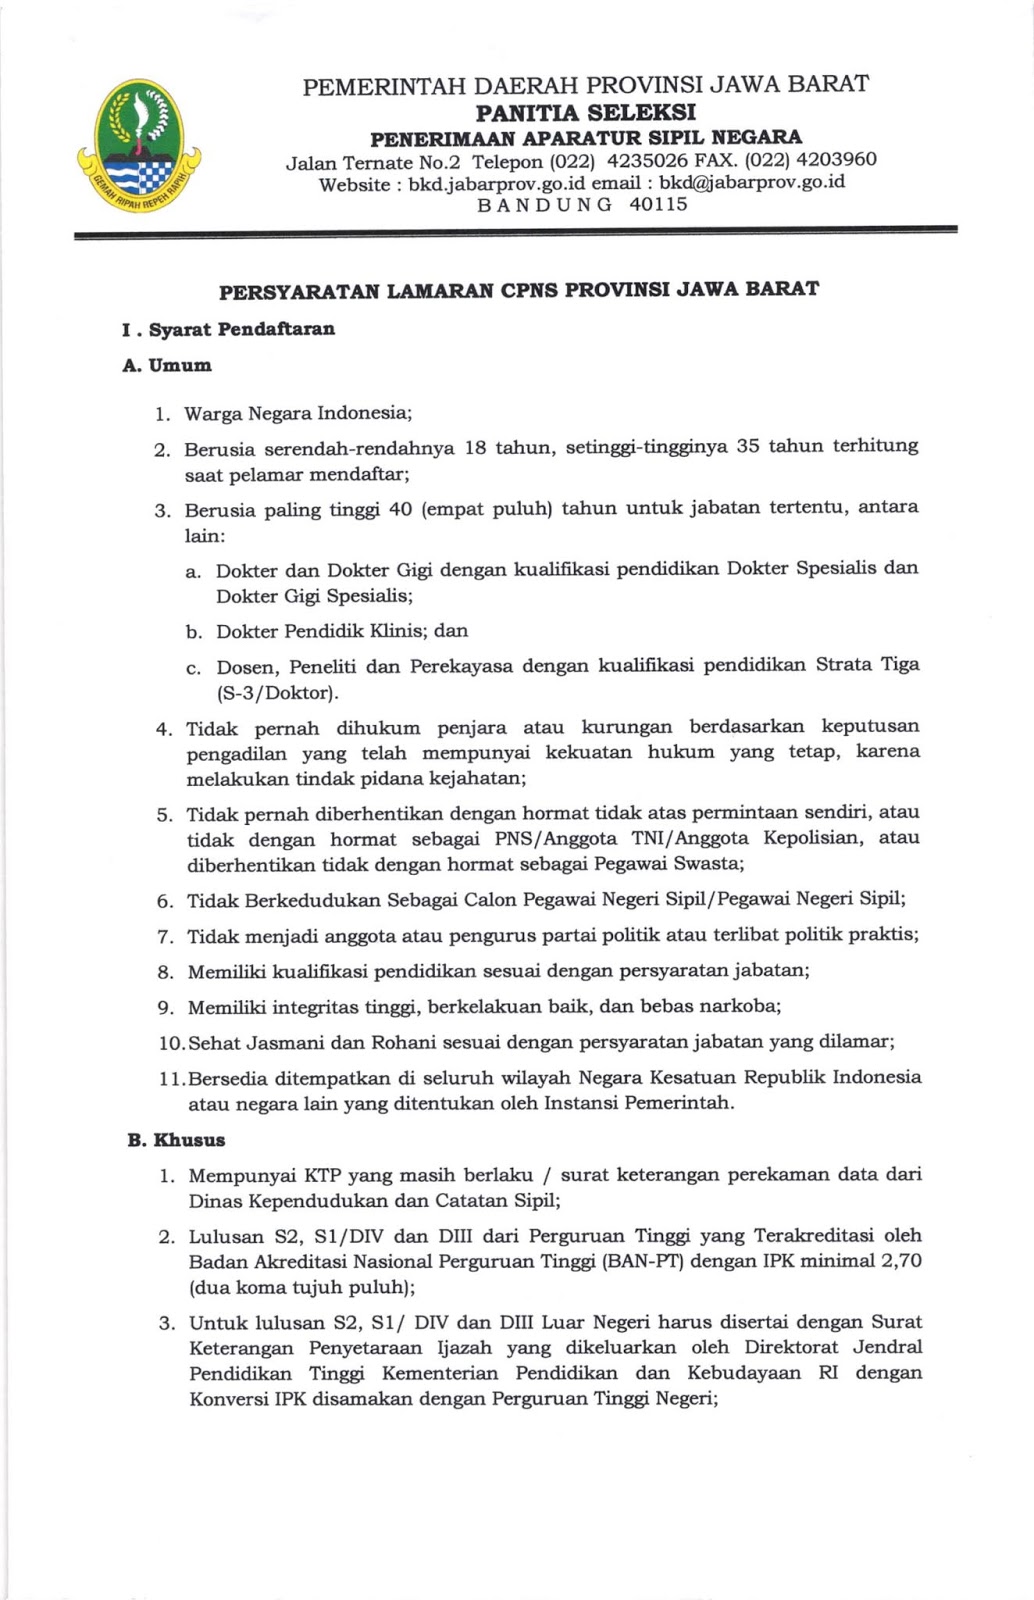 Detail Contoh Surat Lamaran Cpns Provinsi Jawa Barat Nomer 19